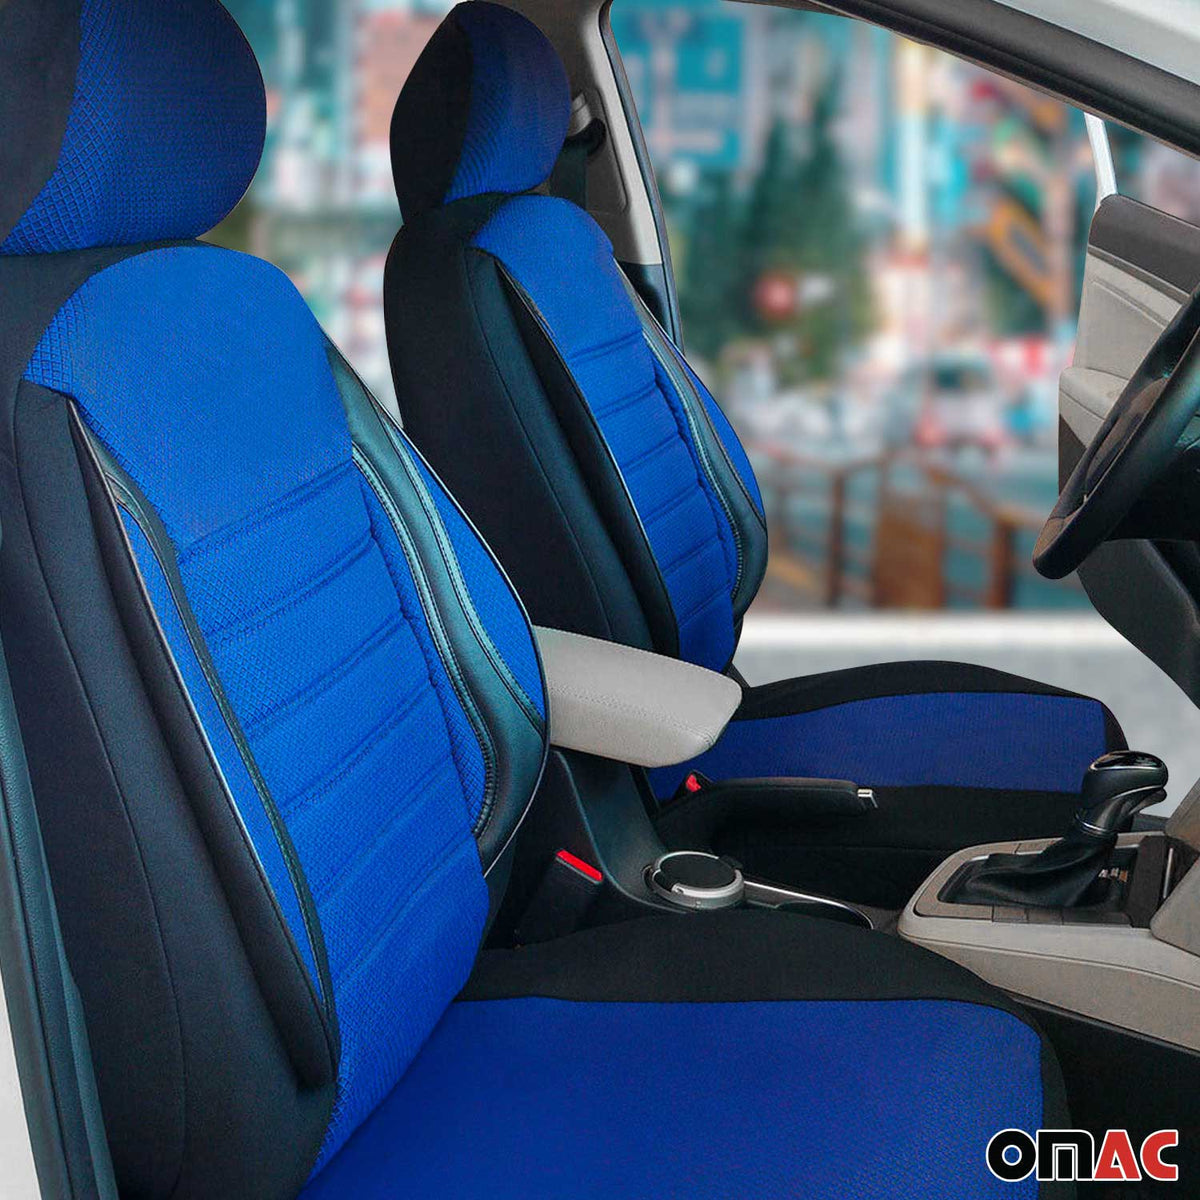 Schonbezüge Sitzbezüge für Peugeot 307 Schwarz Blau 2 Sitz Vorne Satz